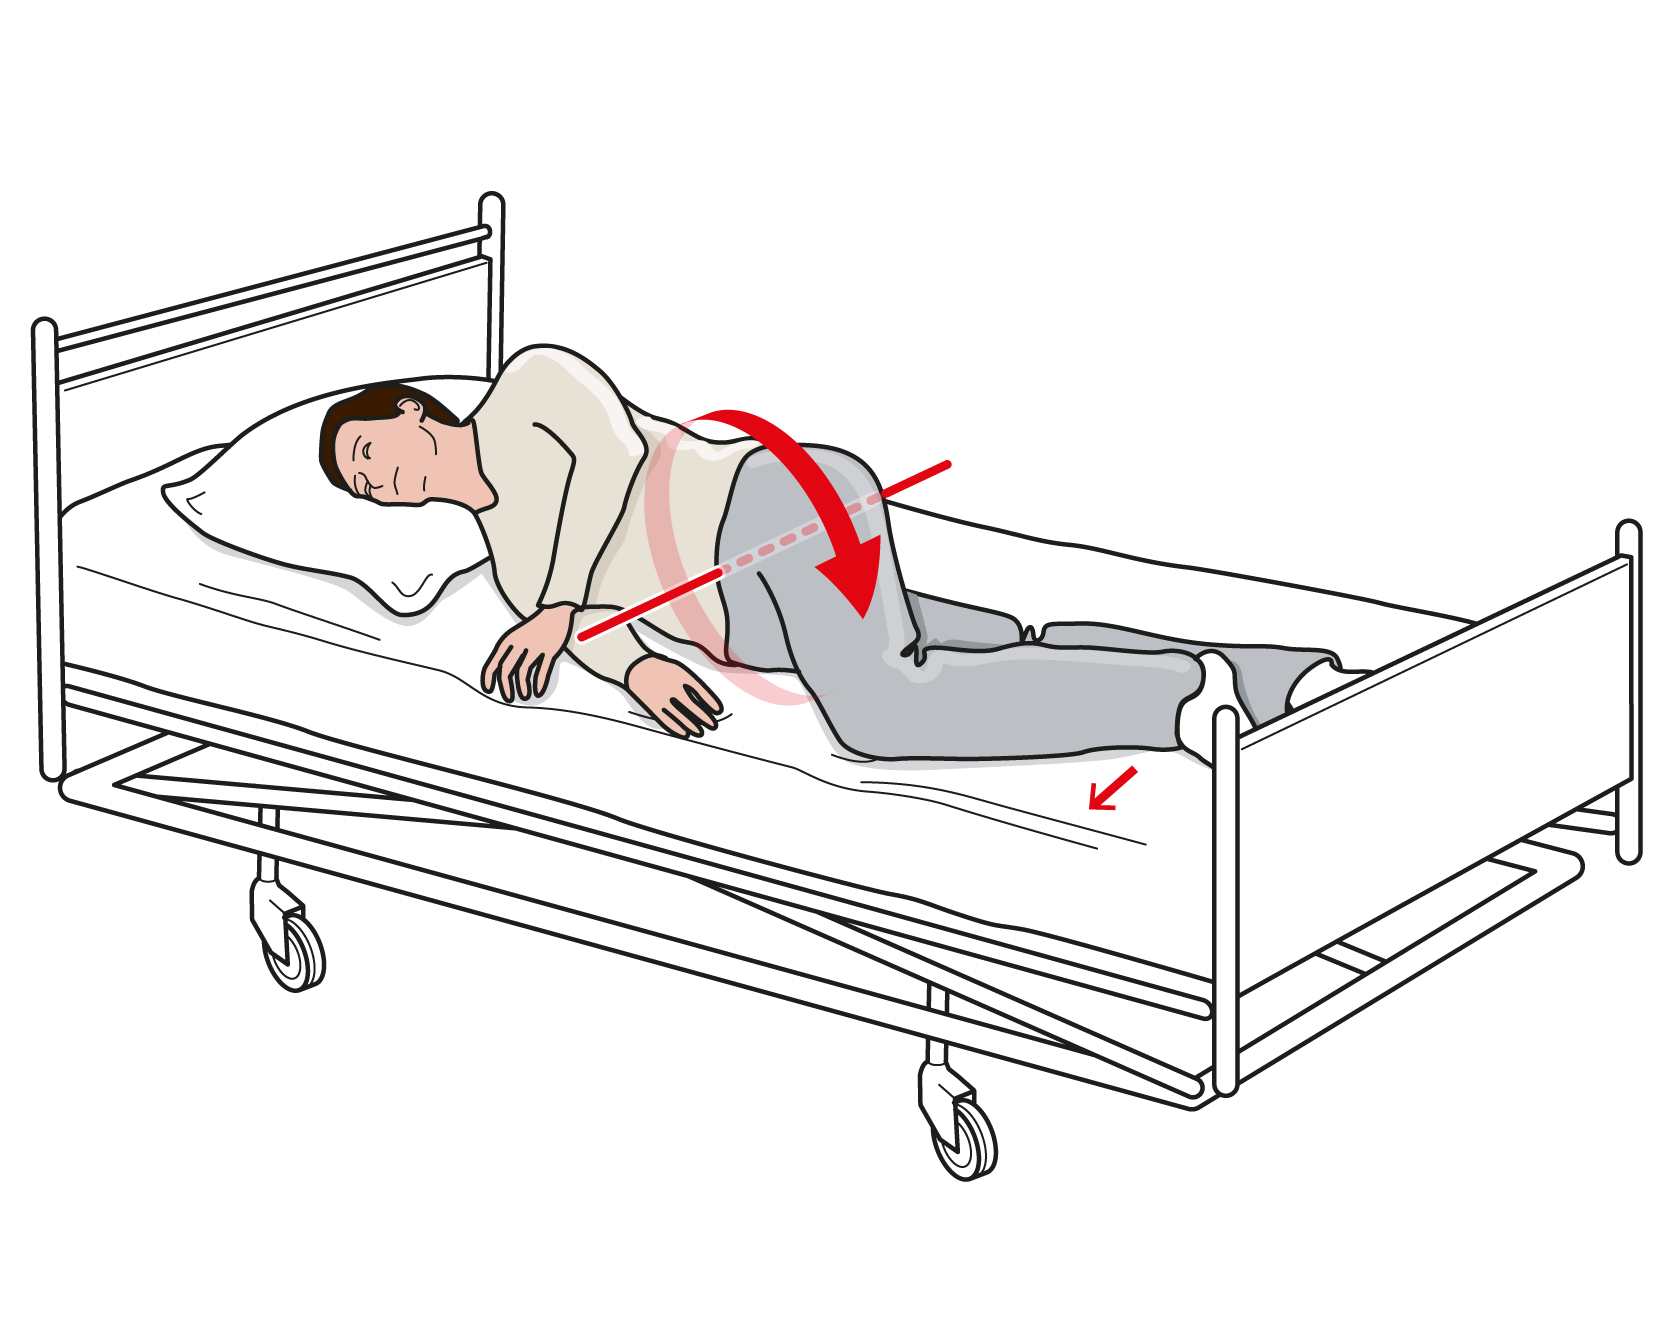 Illustration som visar person liggandes på sidan i sjukhussäng